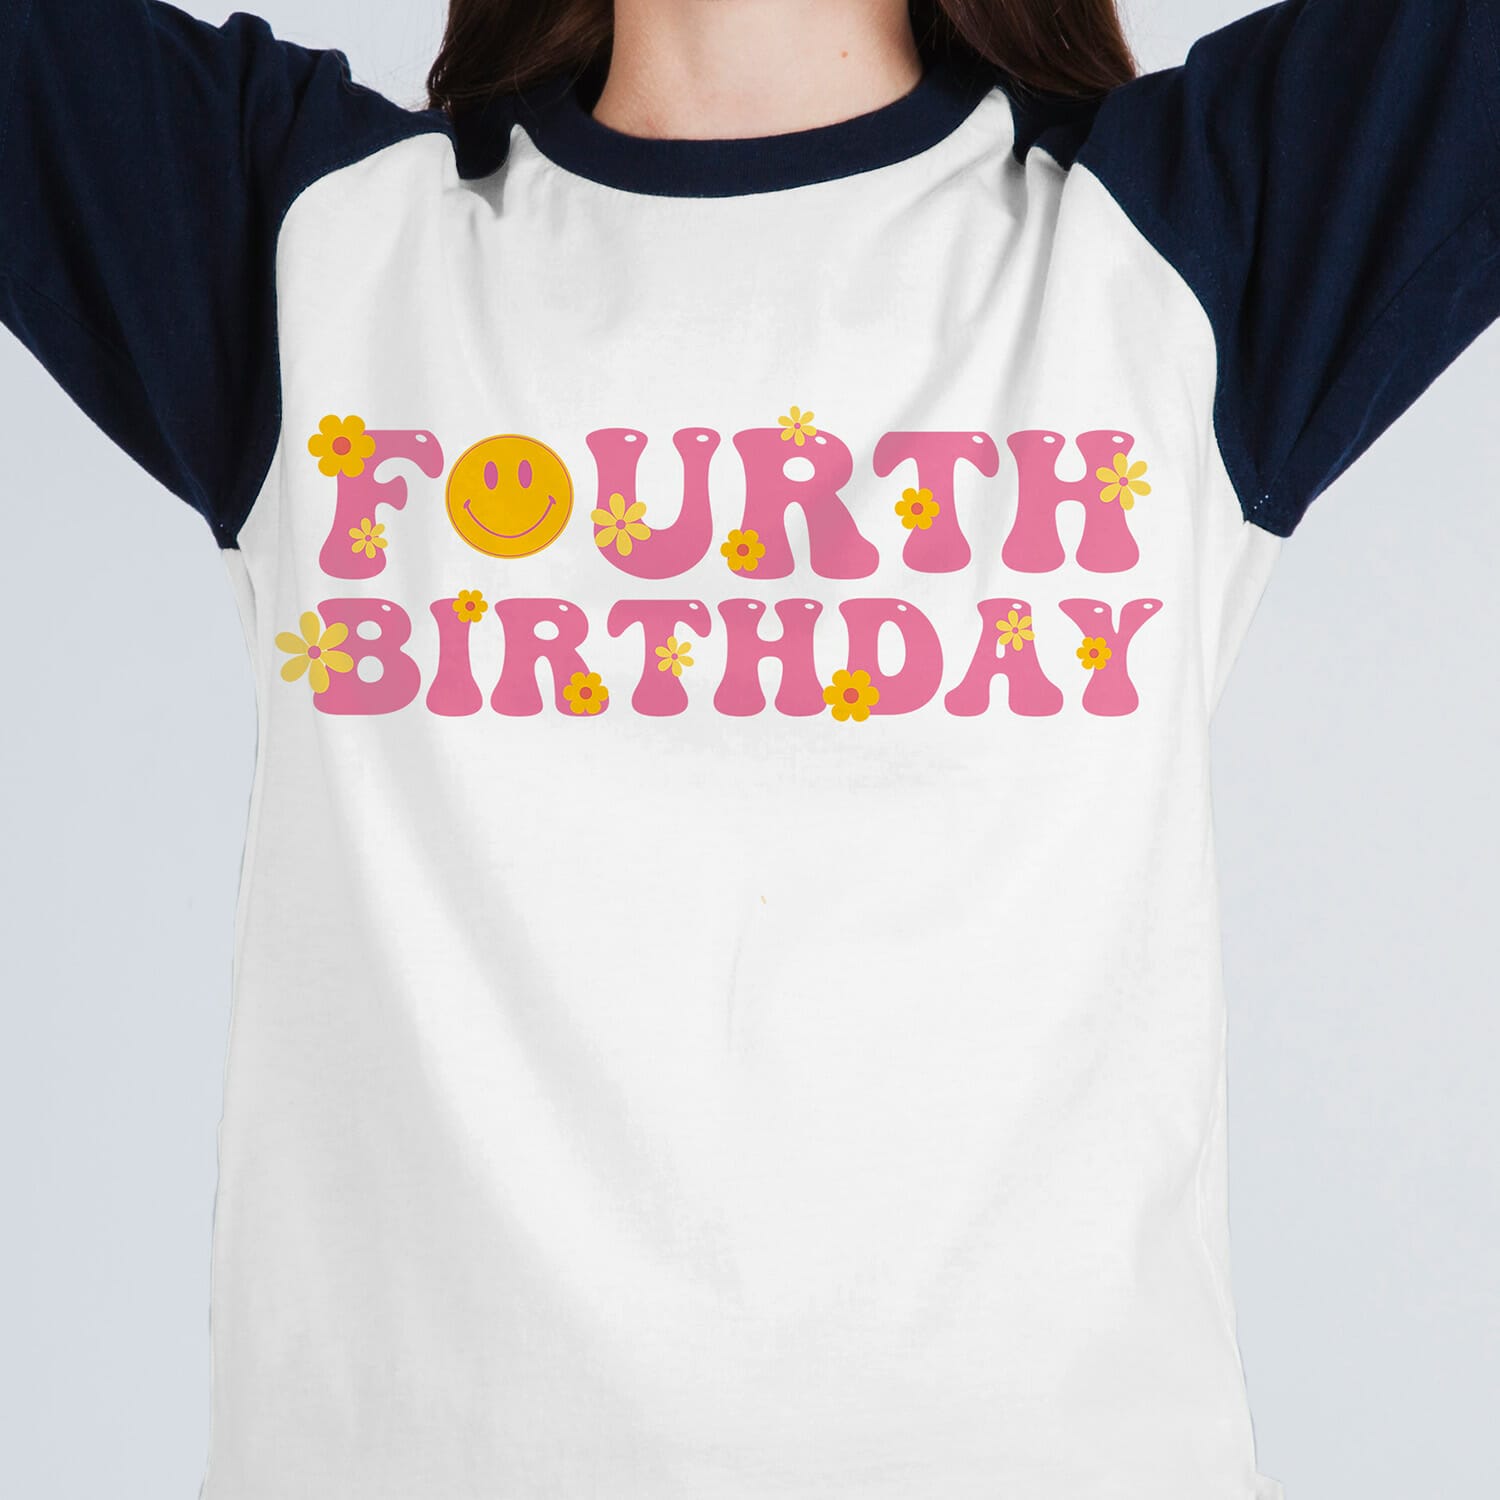 Groovy Style Fourth Birthday Tshirt Design